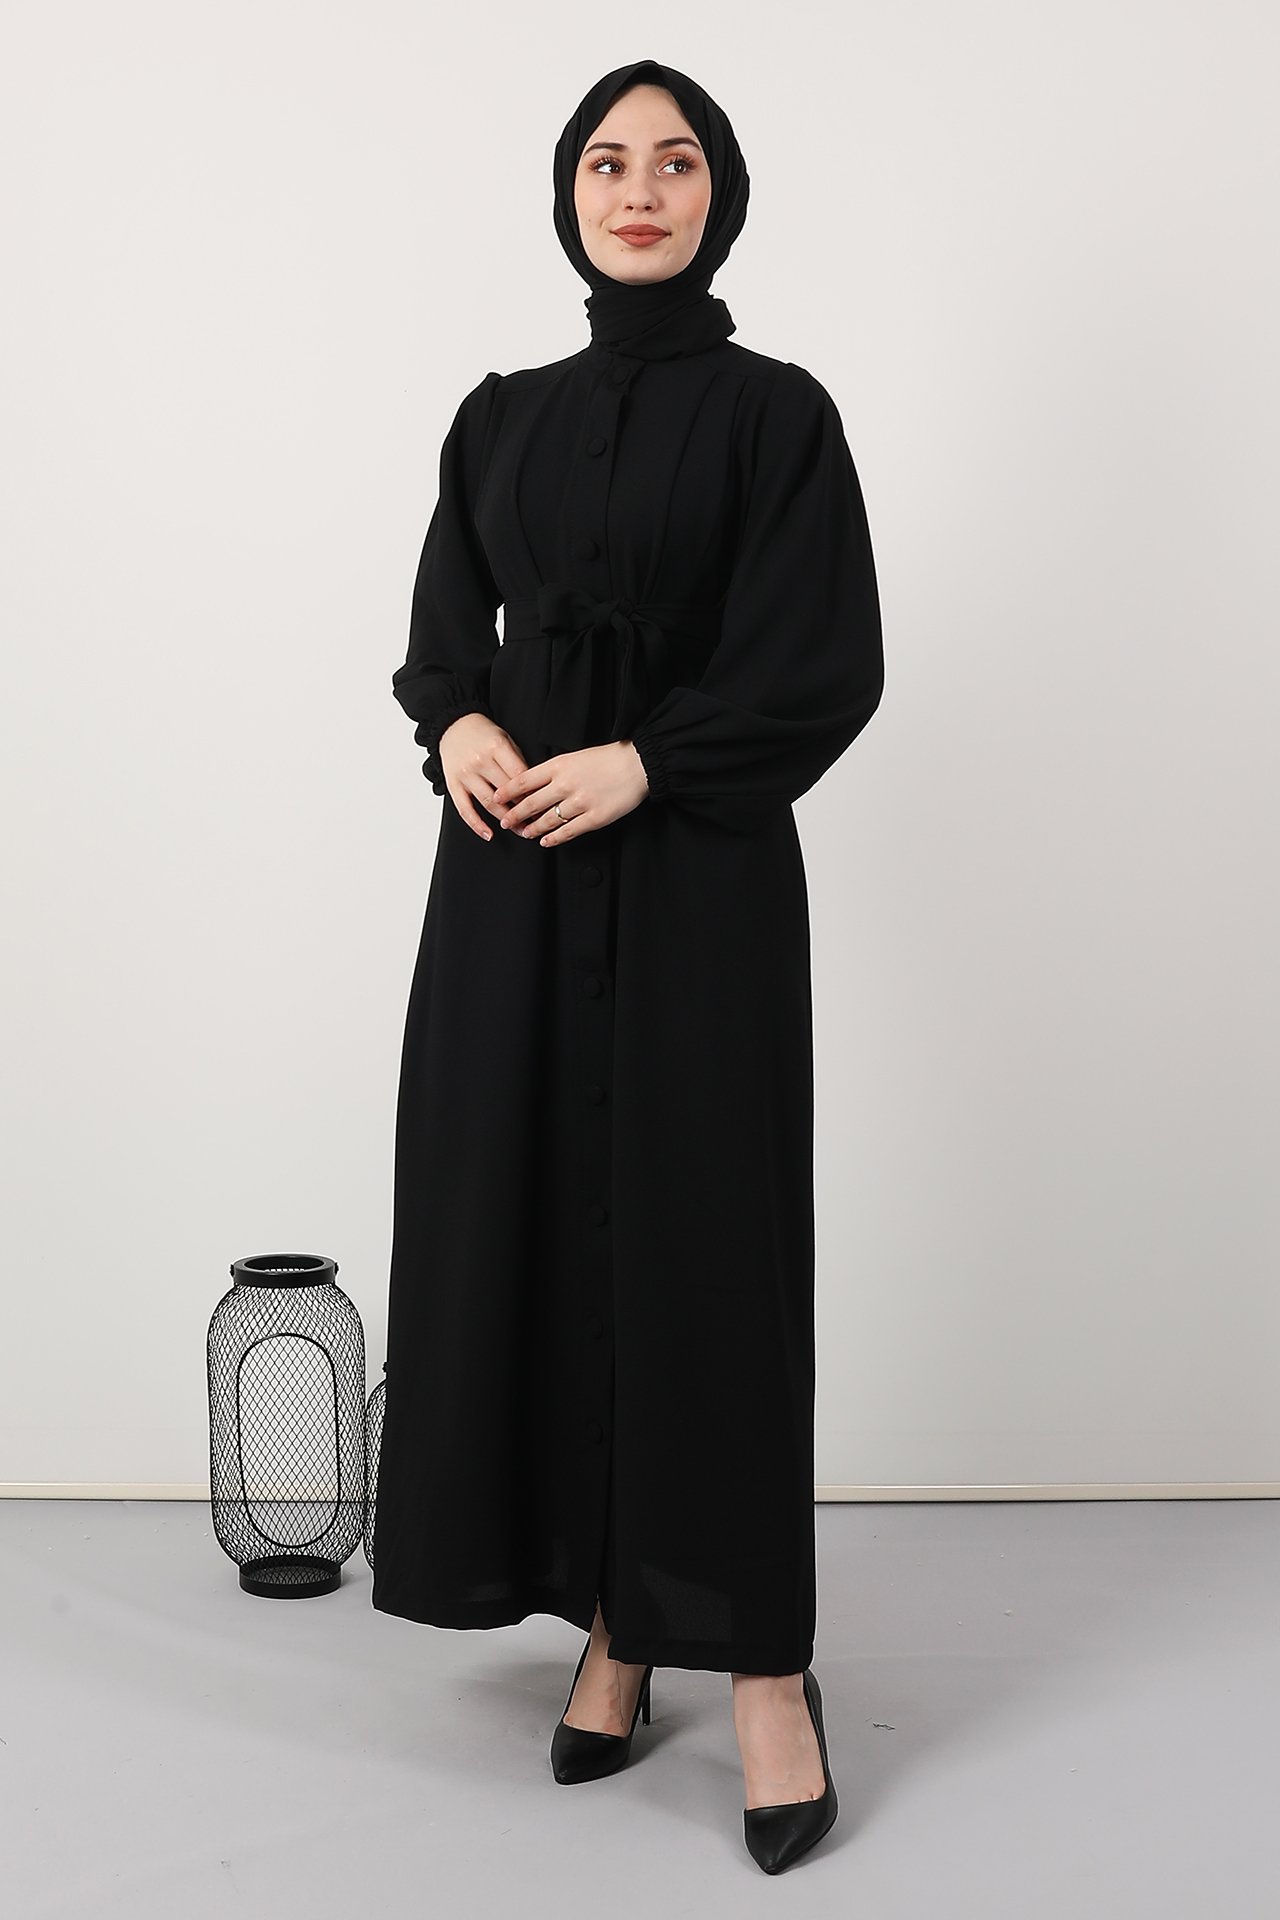 GİZAGİYİM - Düğmeli Pileli Ferace Elbise Siyah